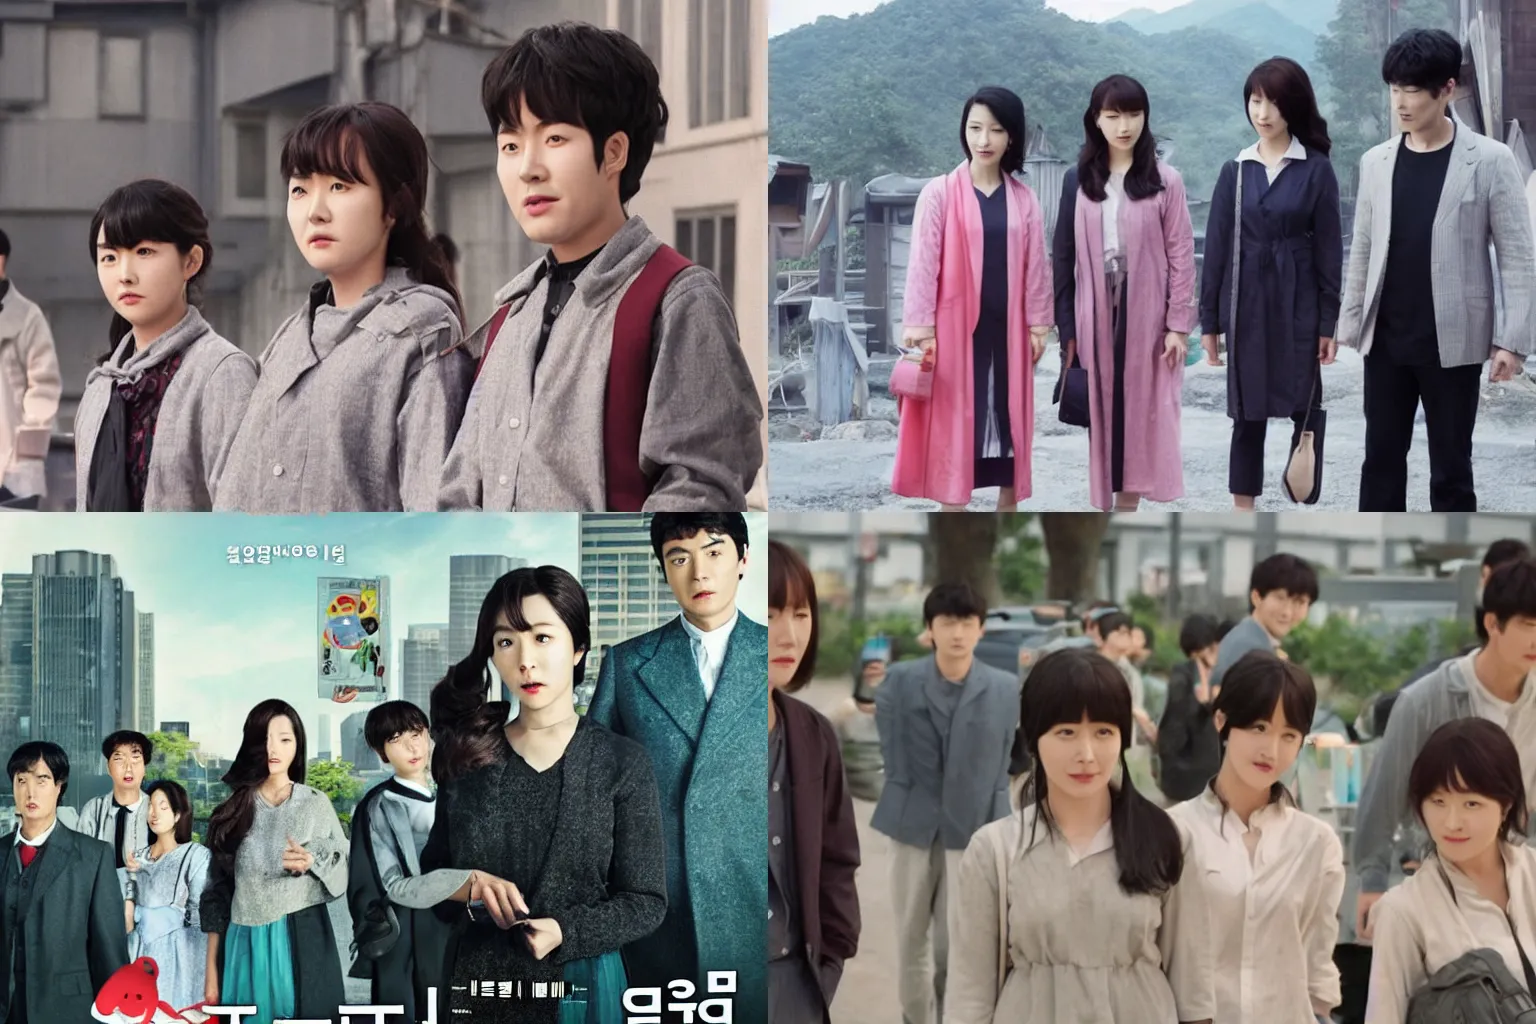 Prompt: korean film still from korean adaptation of roblox